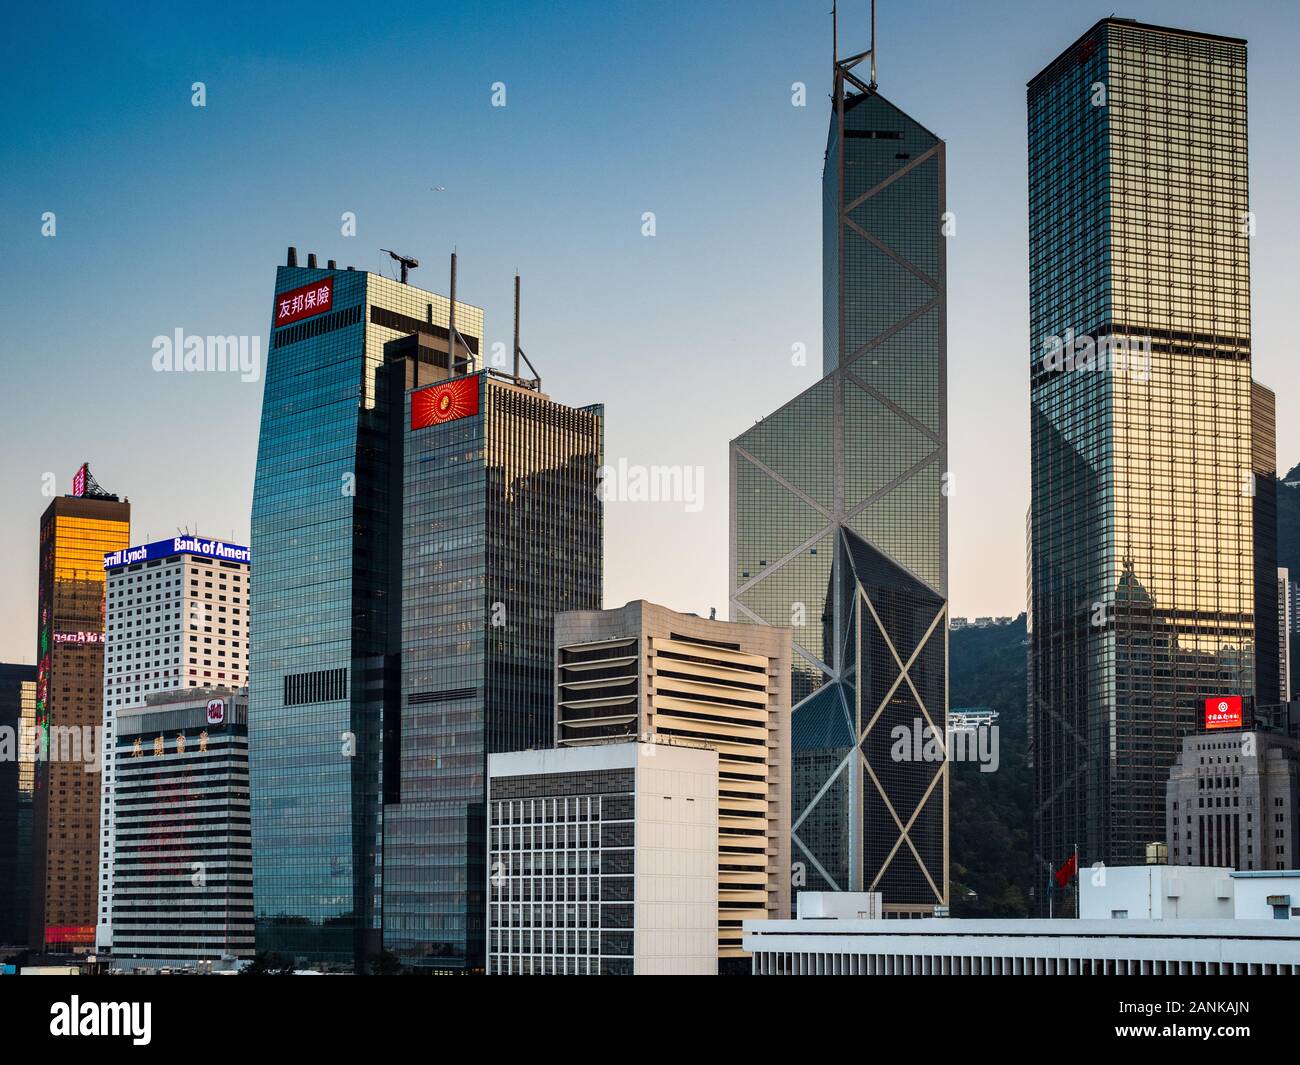 Gratte-ciel de Hong Kong - tours Modernes de gratte-ciel au bord de l'eau sur l'île de Hong Kong, en Chine de Hong Kong. Banque de Chine bâtiments & Cheung Kong Centre. Banque D'Images